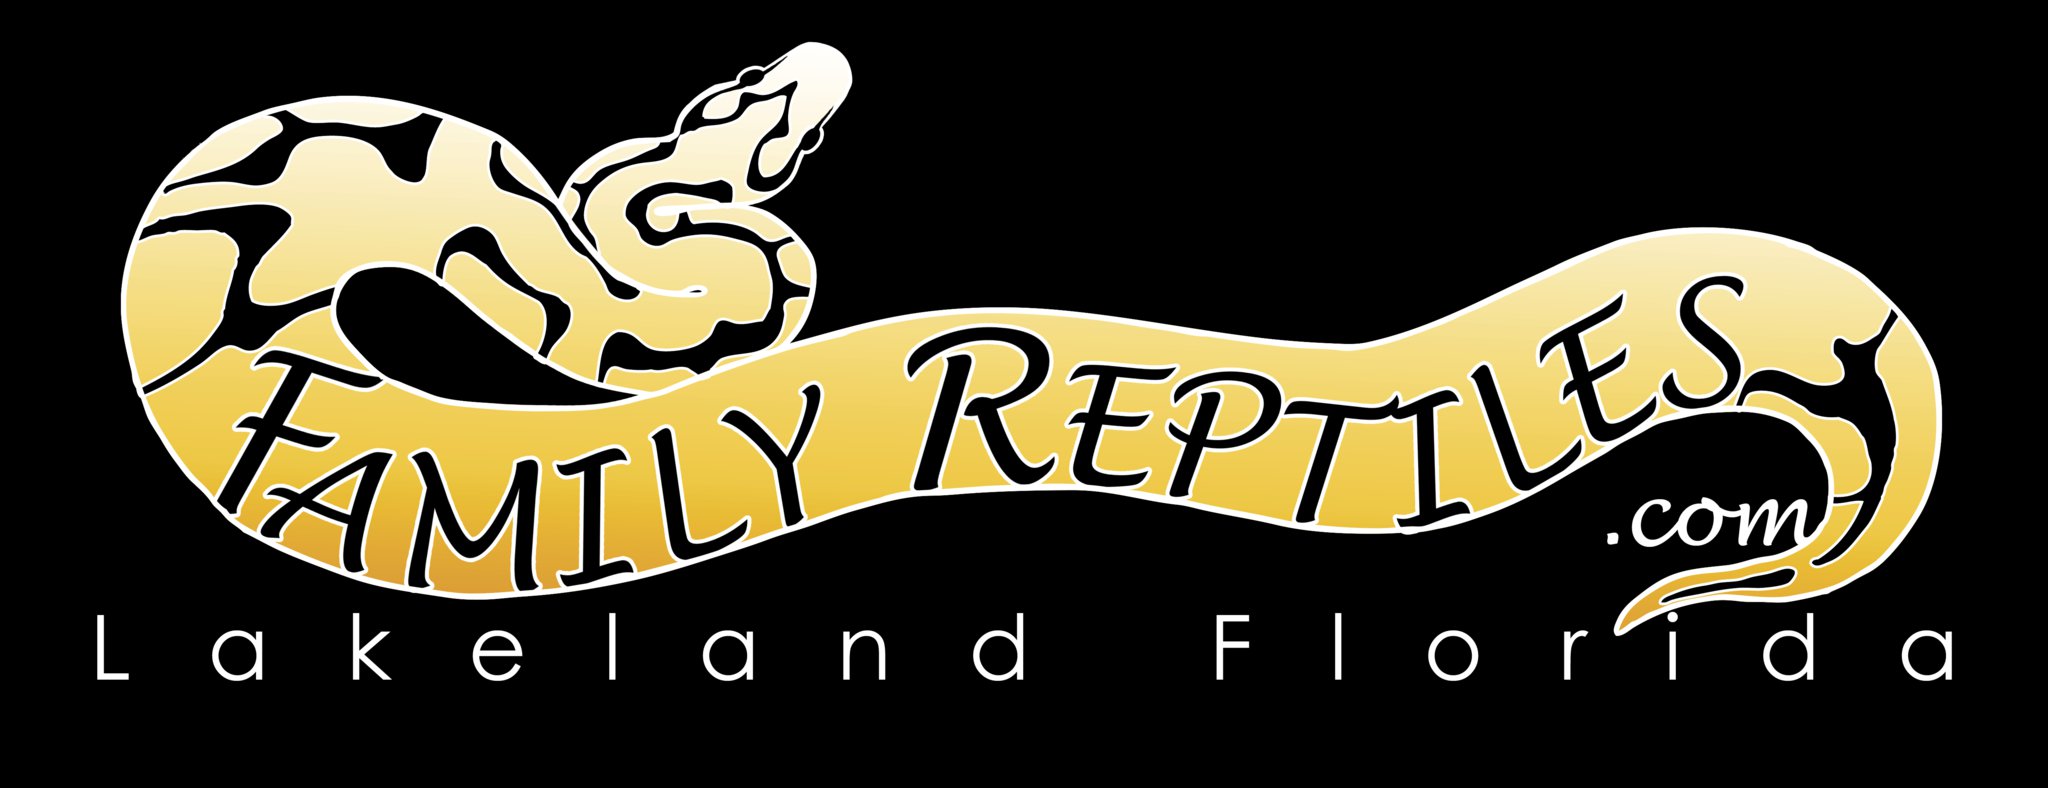 Company logo of Family Reptiles